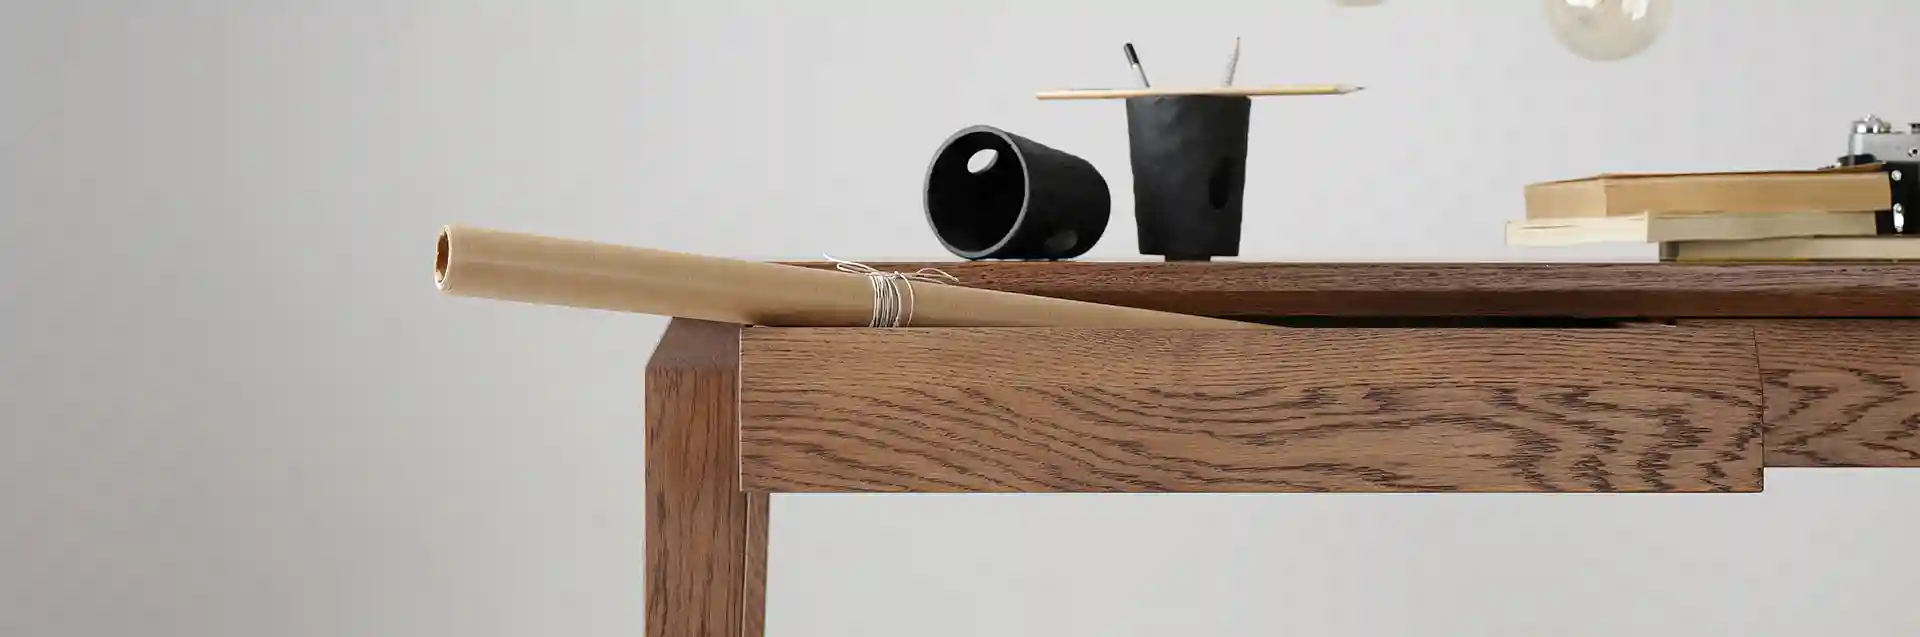   Biurko drewniane dębowe  MILONI AVANGARDE, kolor 06:Nutty, Wymiary: Dł: 160 x Sz: 80 x Wys: 76 cm, Kategorie: biurko dębowe, biurko drewniane, biurko gabinetowe